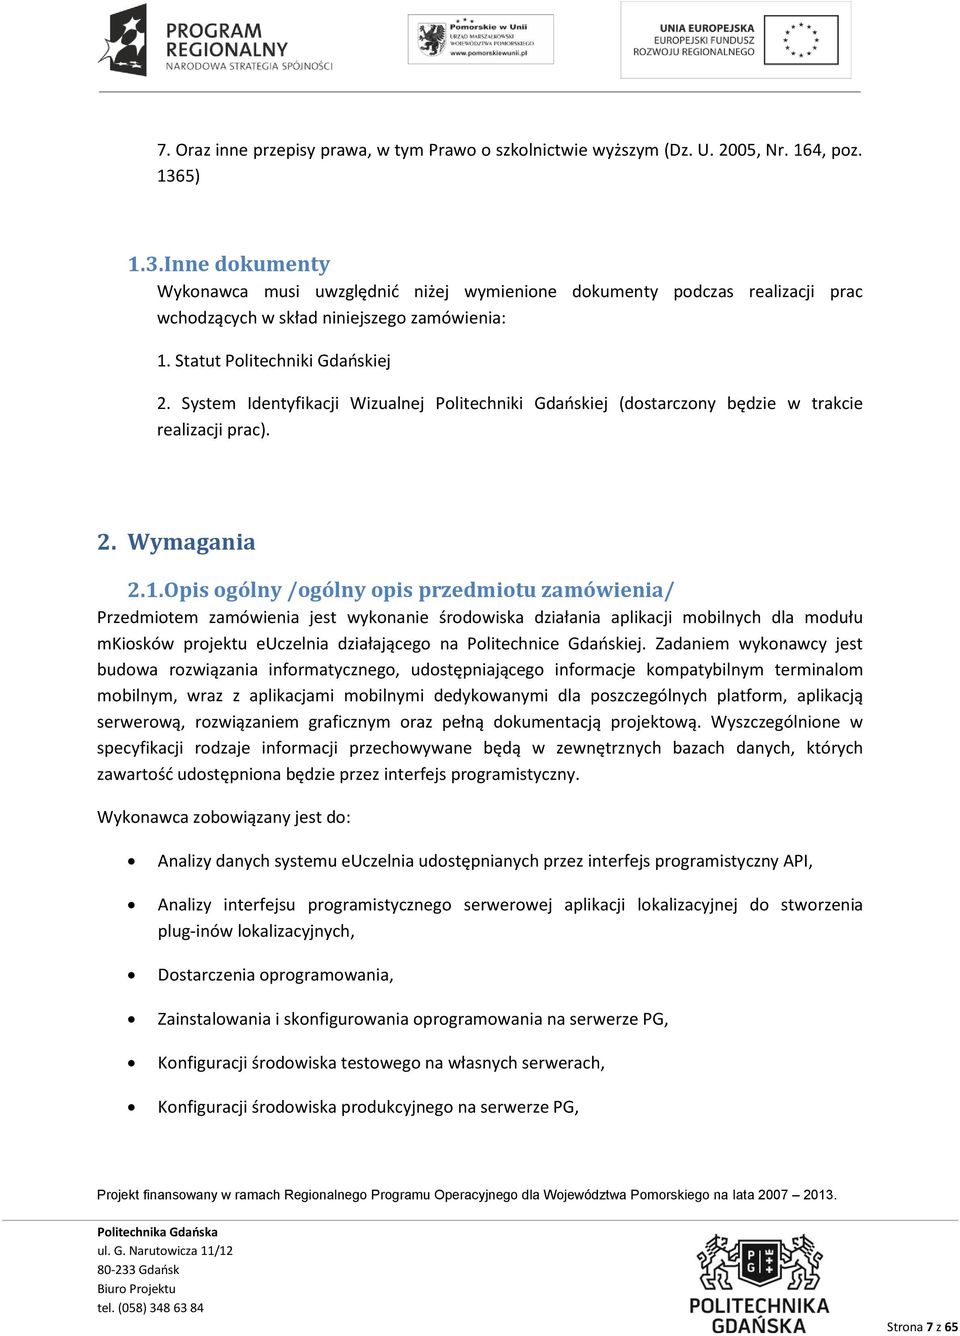 System Identyfikacji Wizualnej Politechniki Gdańskiej (dostarczony będzie w trakcie realizacji prac). 2. Wymagania 2.1.